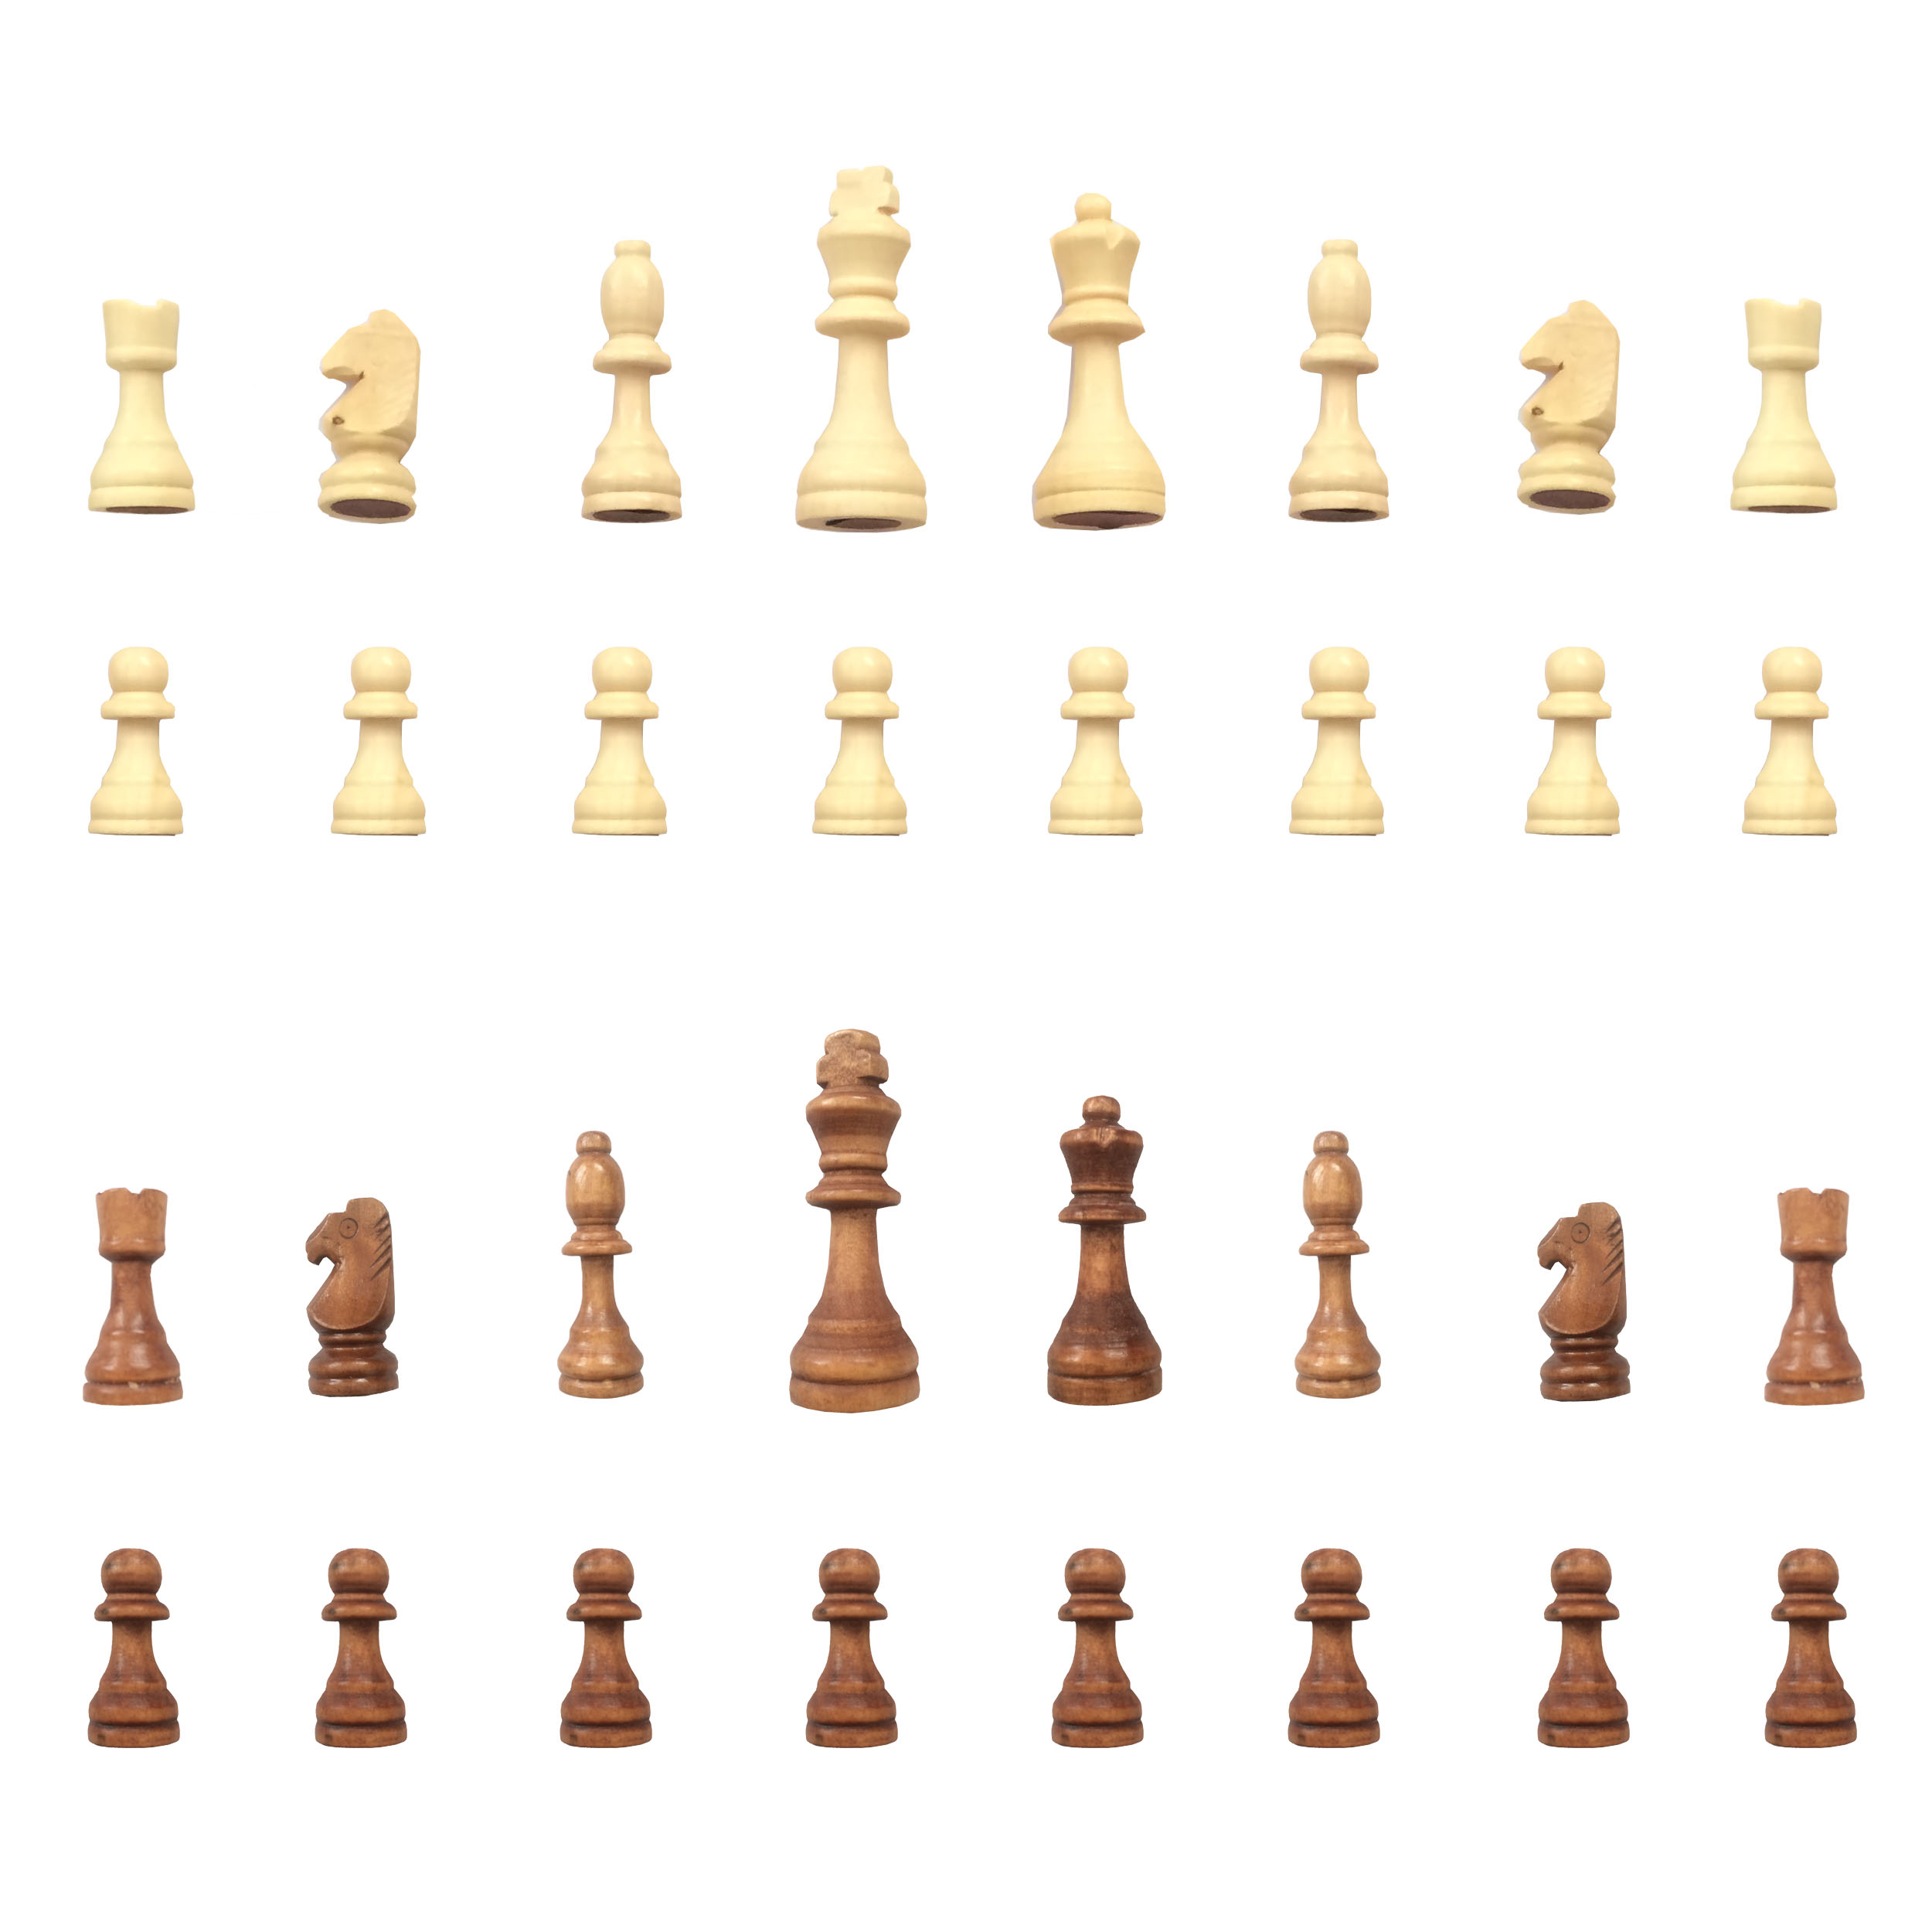 آنباکس مهره شطرنج مدل G1 مجموعه 32 عددی توسط امیرحسین بابائی در تاریخ ۲۱ آذر ۱۴۰۰